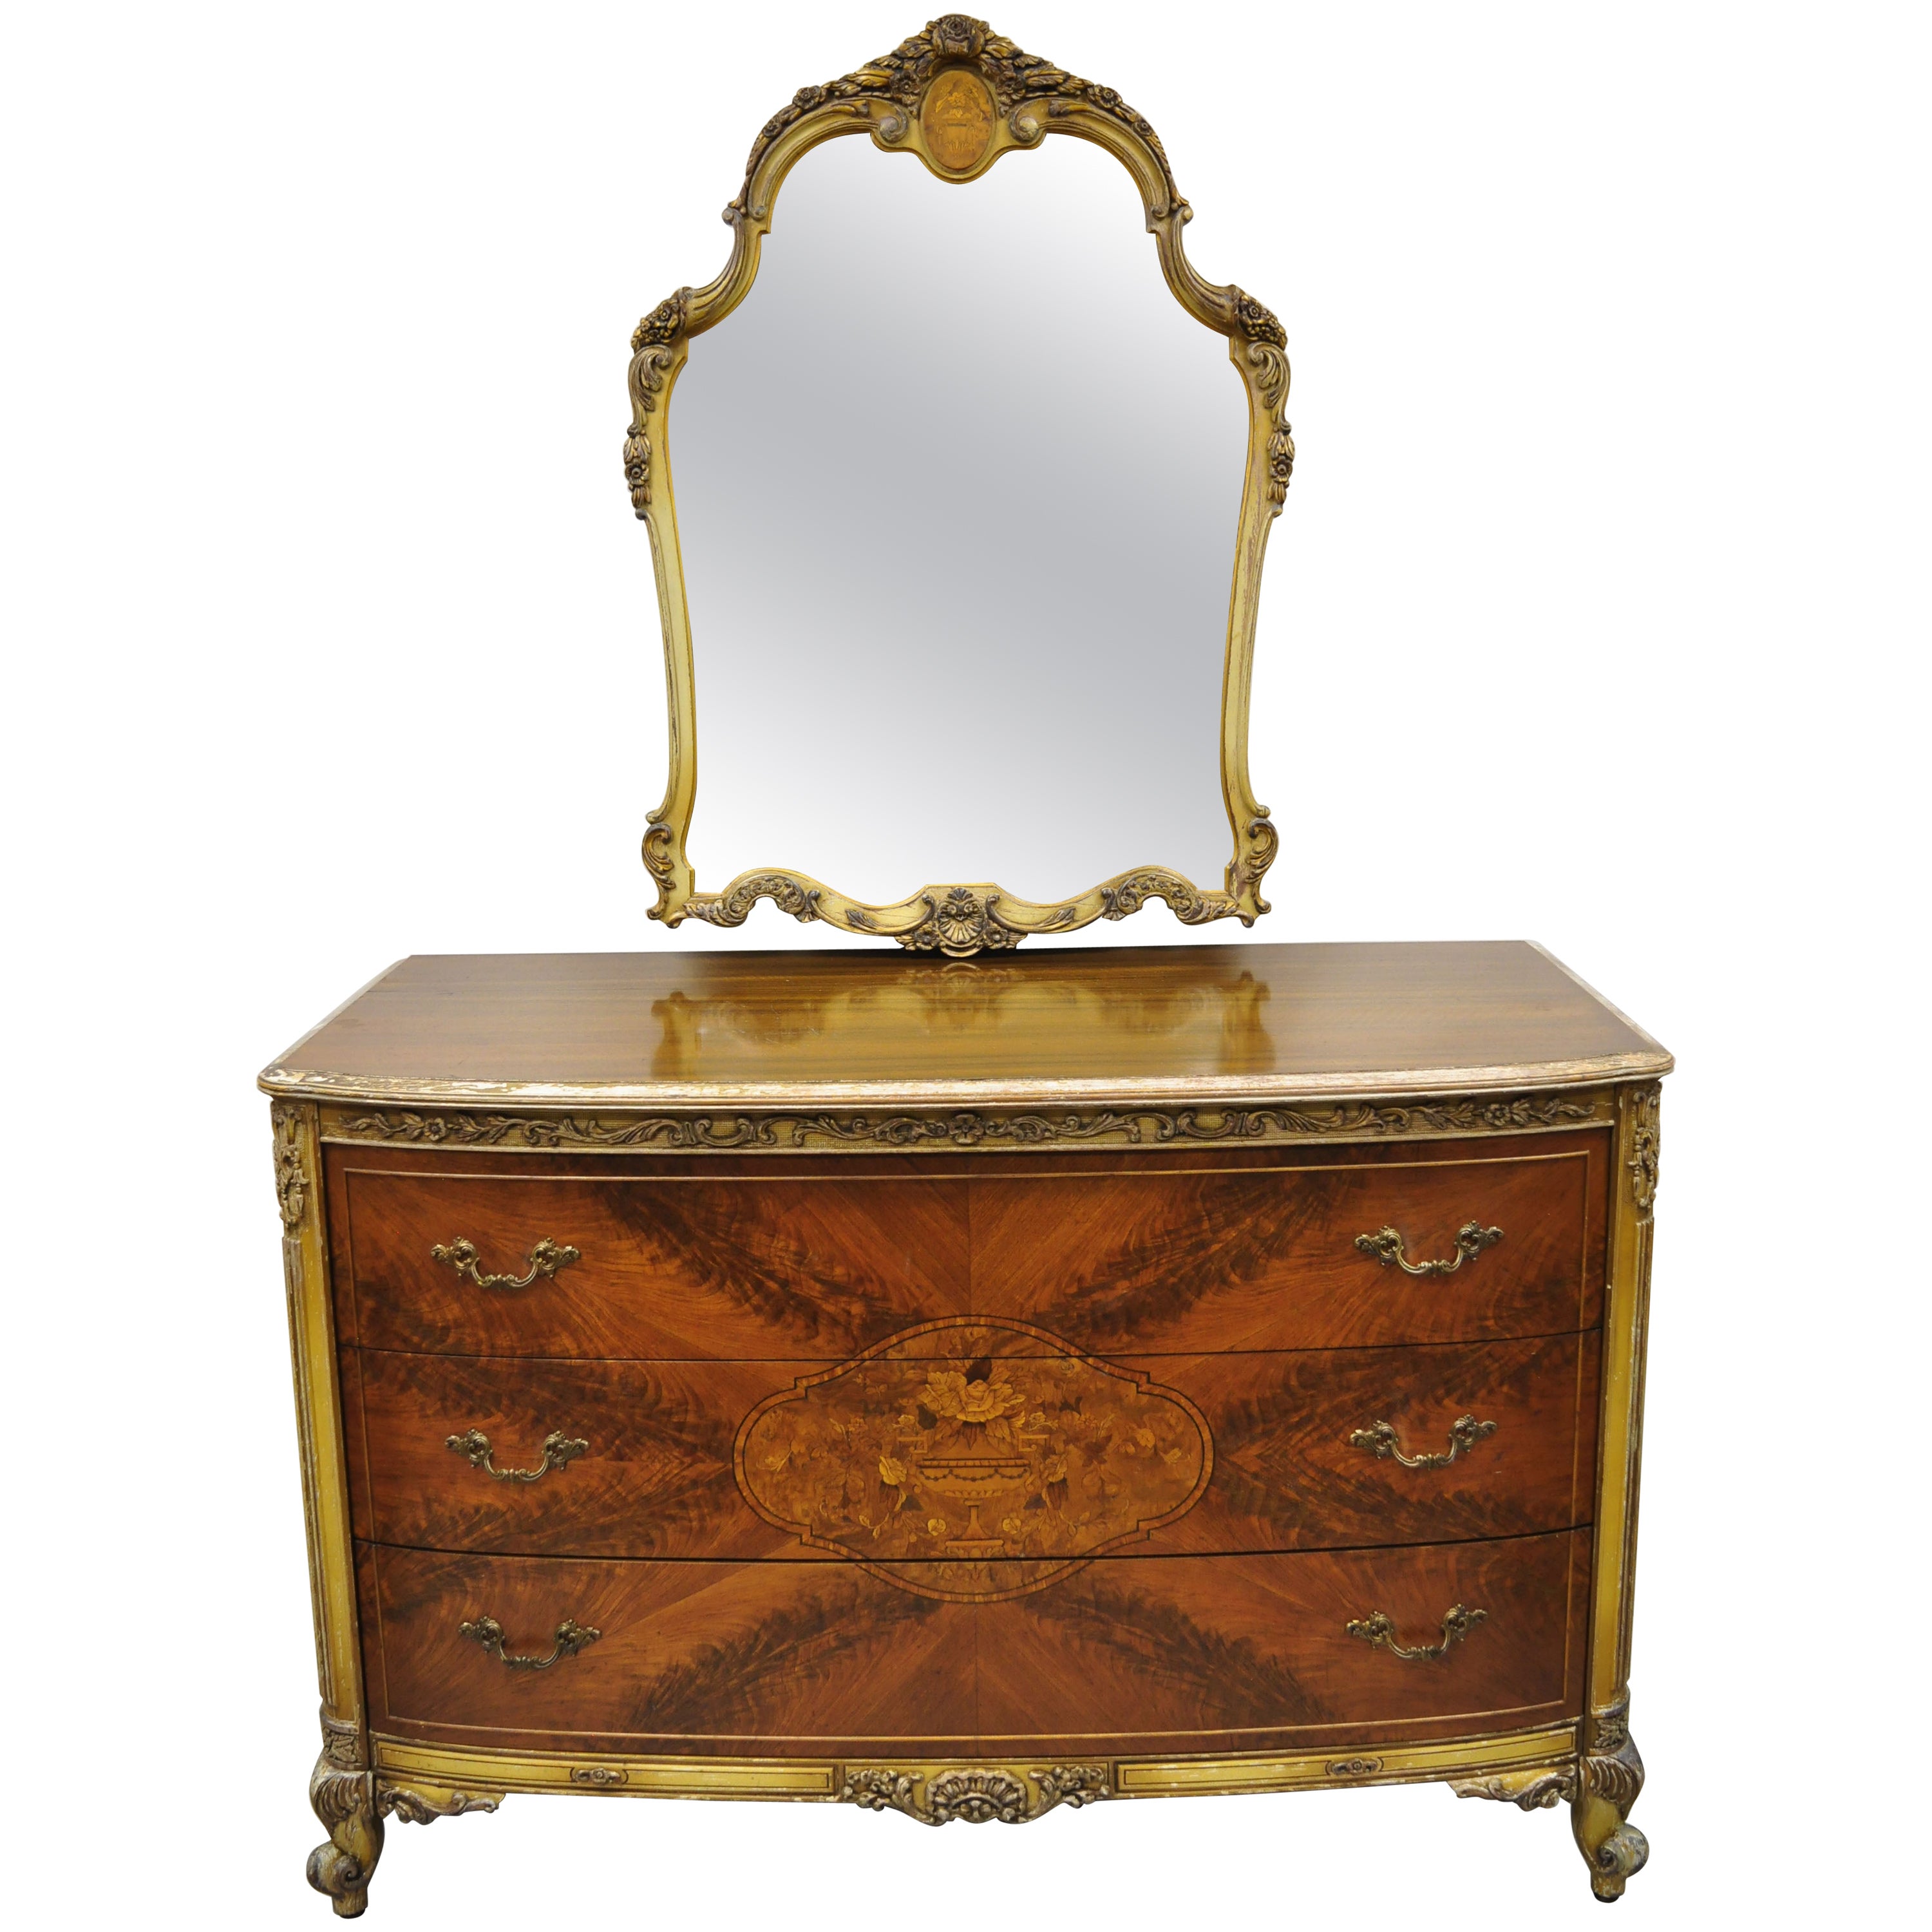 Ancienne commode et miroir français Louis XV en acajou incrusté de bois de satin à motifs floraux